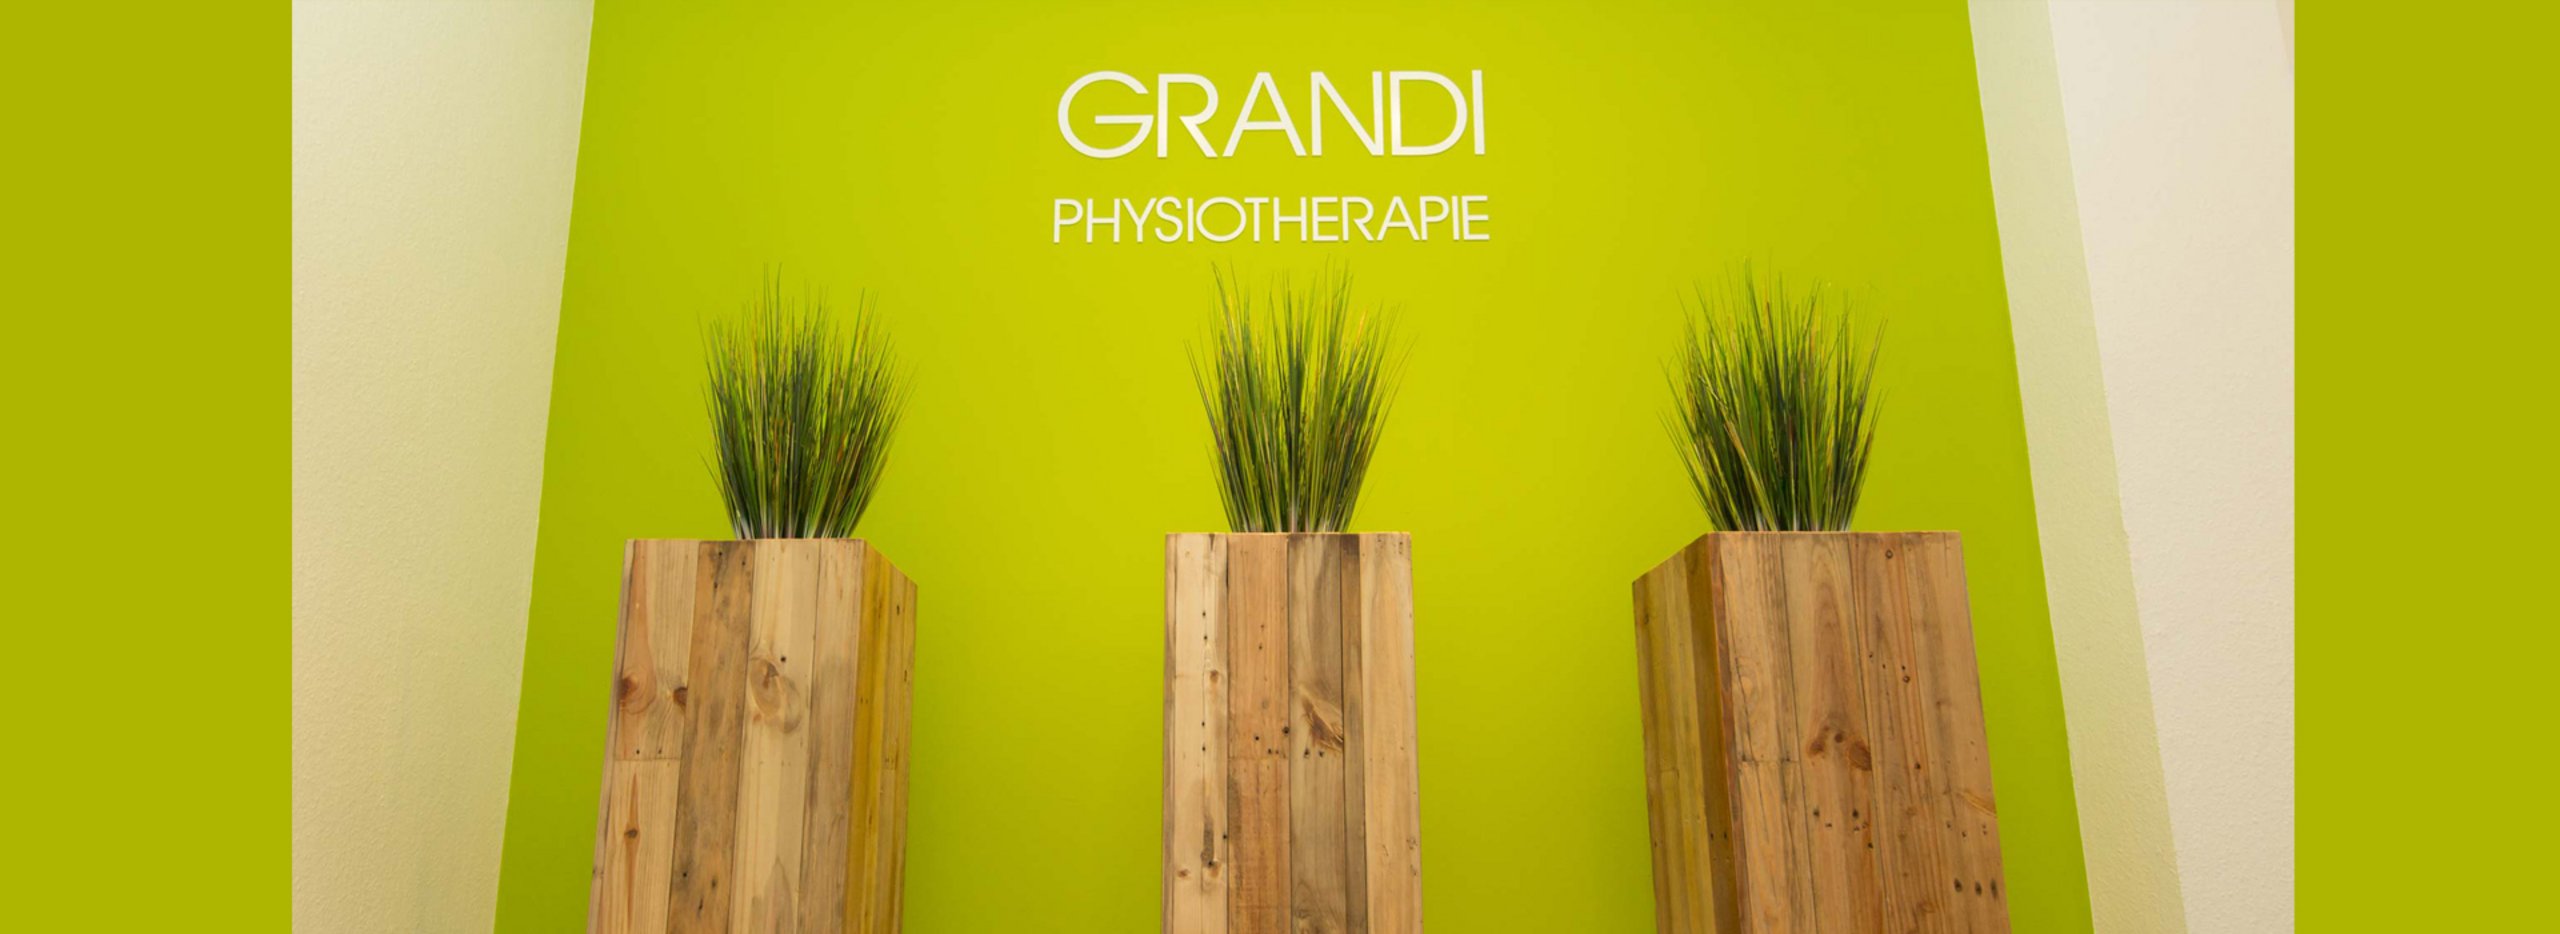 Grandi Physiotherapie Poppenbüttel